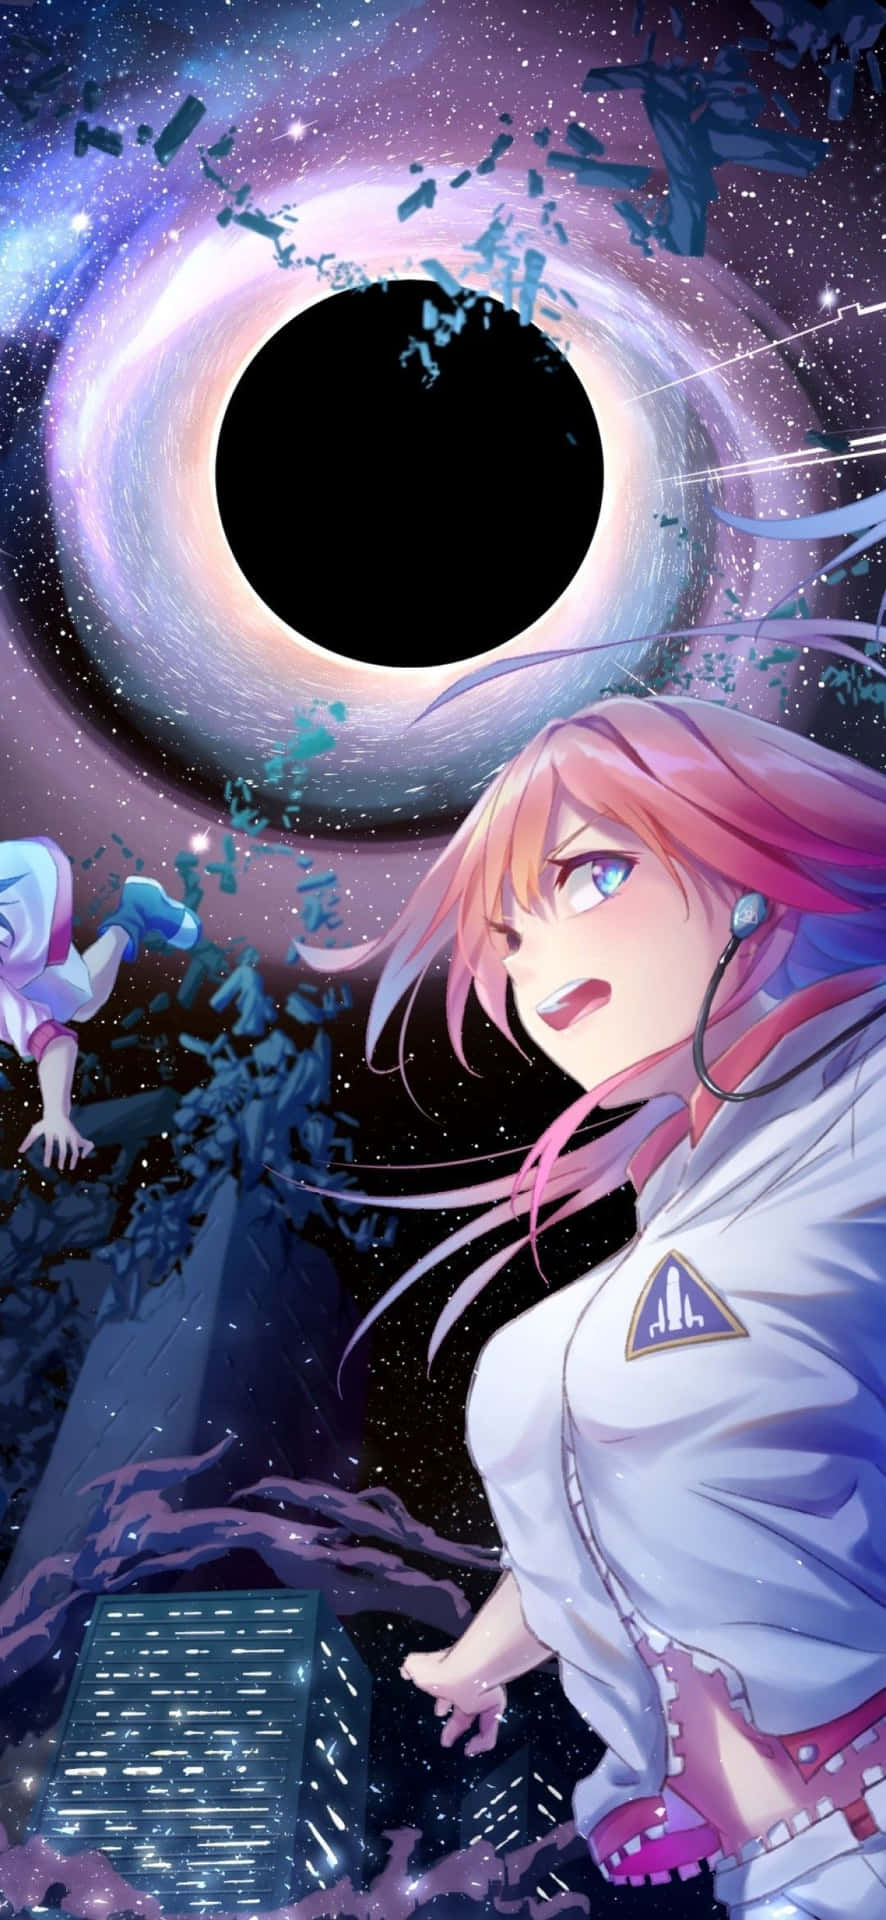 Desdela Fantasía Hasta La Realidad, Animecore Abre Un Nuevo Mundo Lleno De Posibilidades. Fondo de pantalla